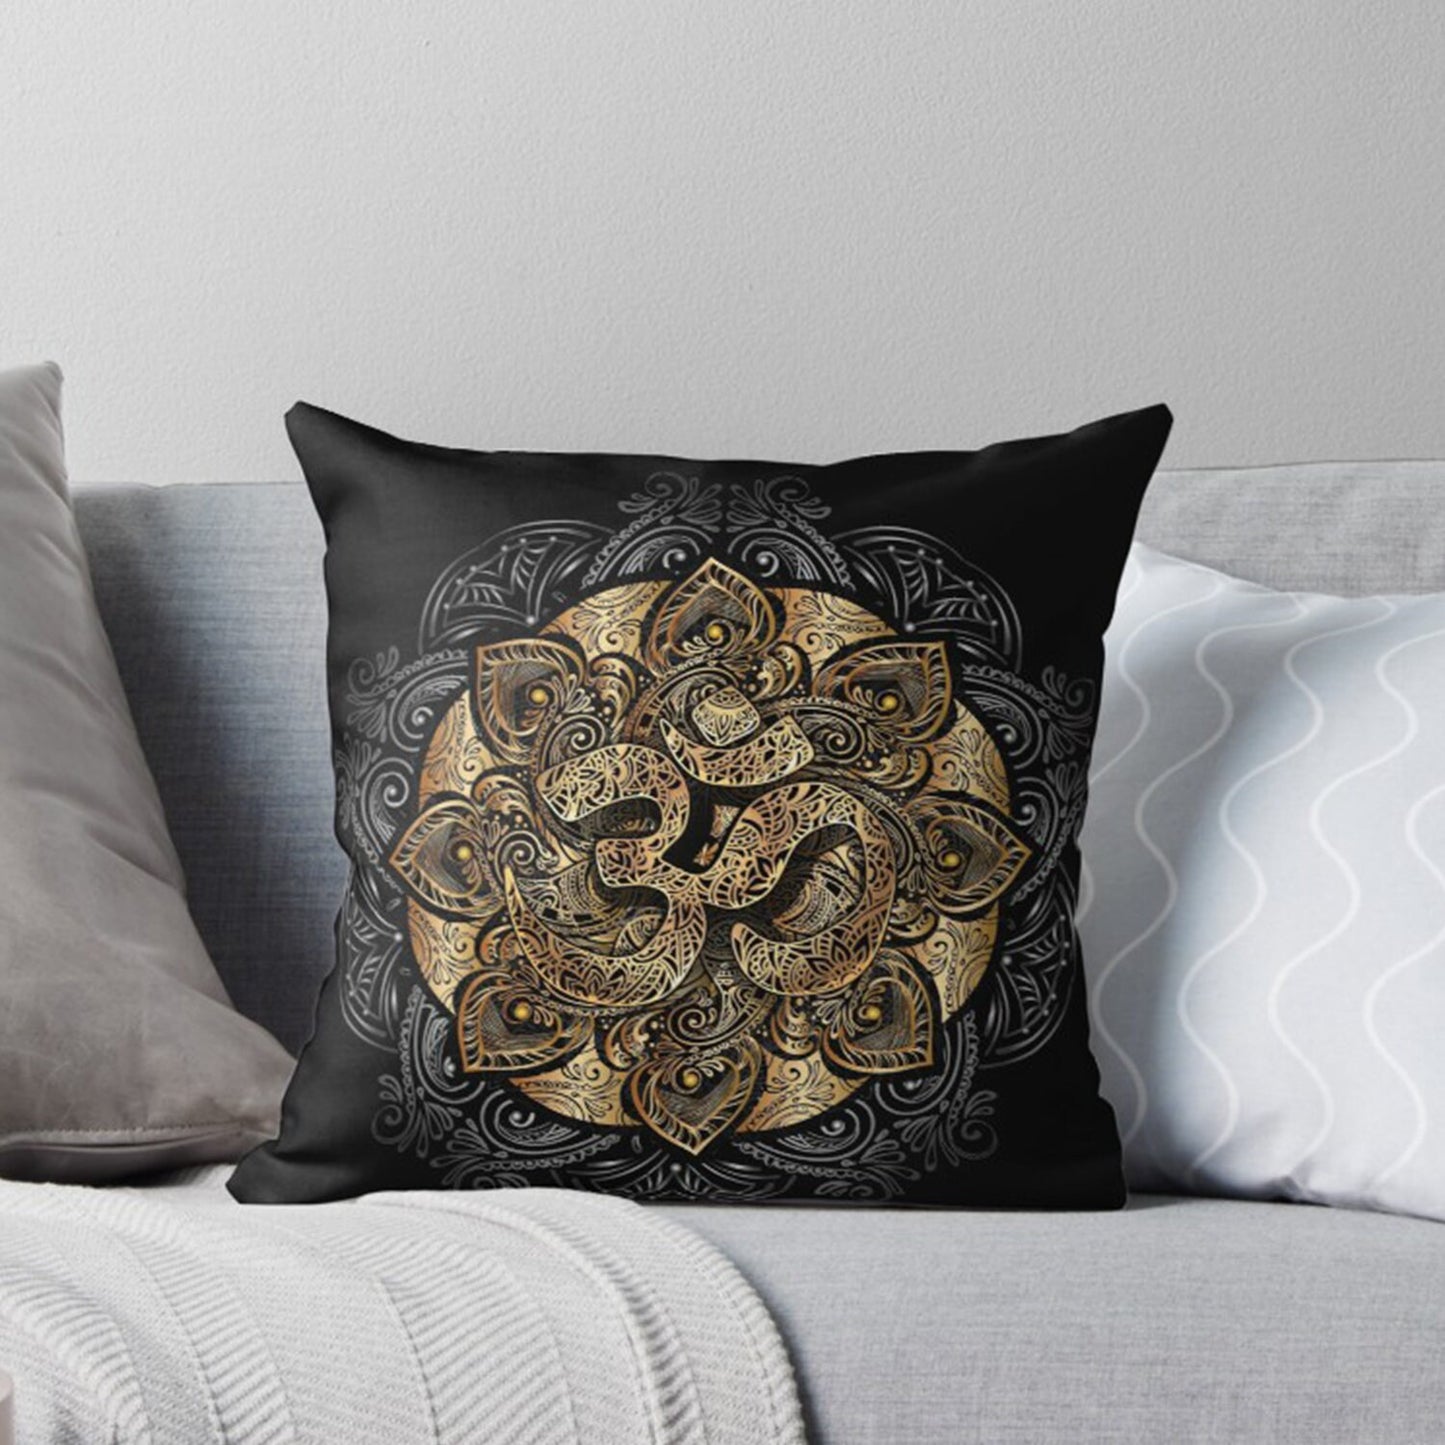 Om pillow om pillows spiritual pillow black pillows spiritual gifts sacred geometry pillows for couch sacred geometry pillow mandala